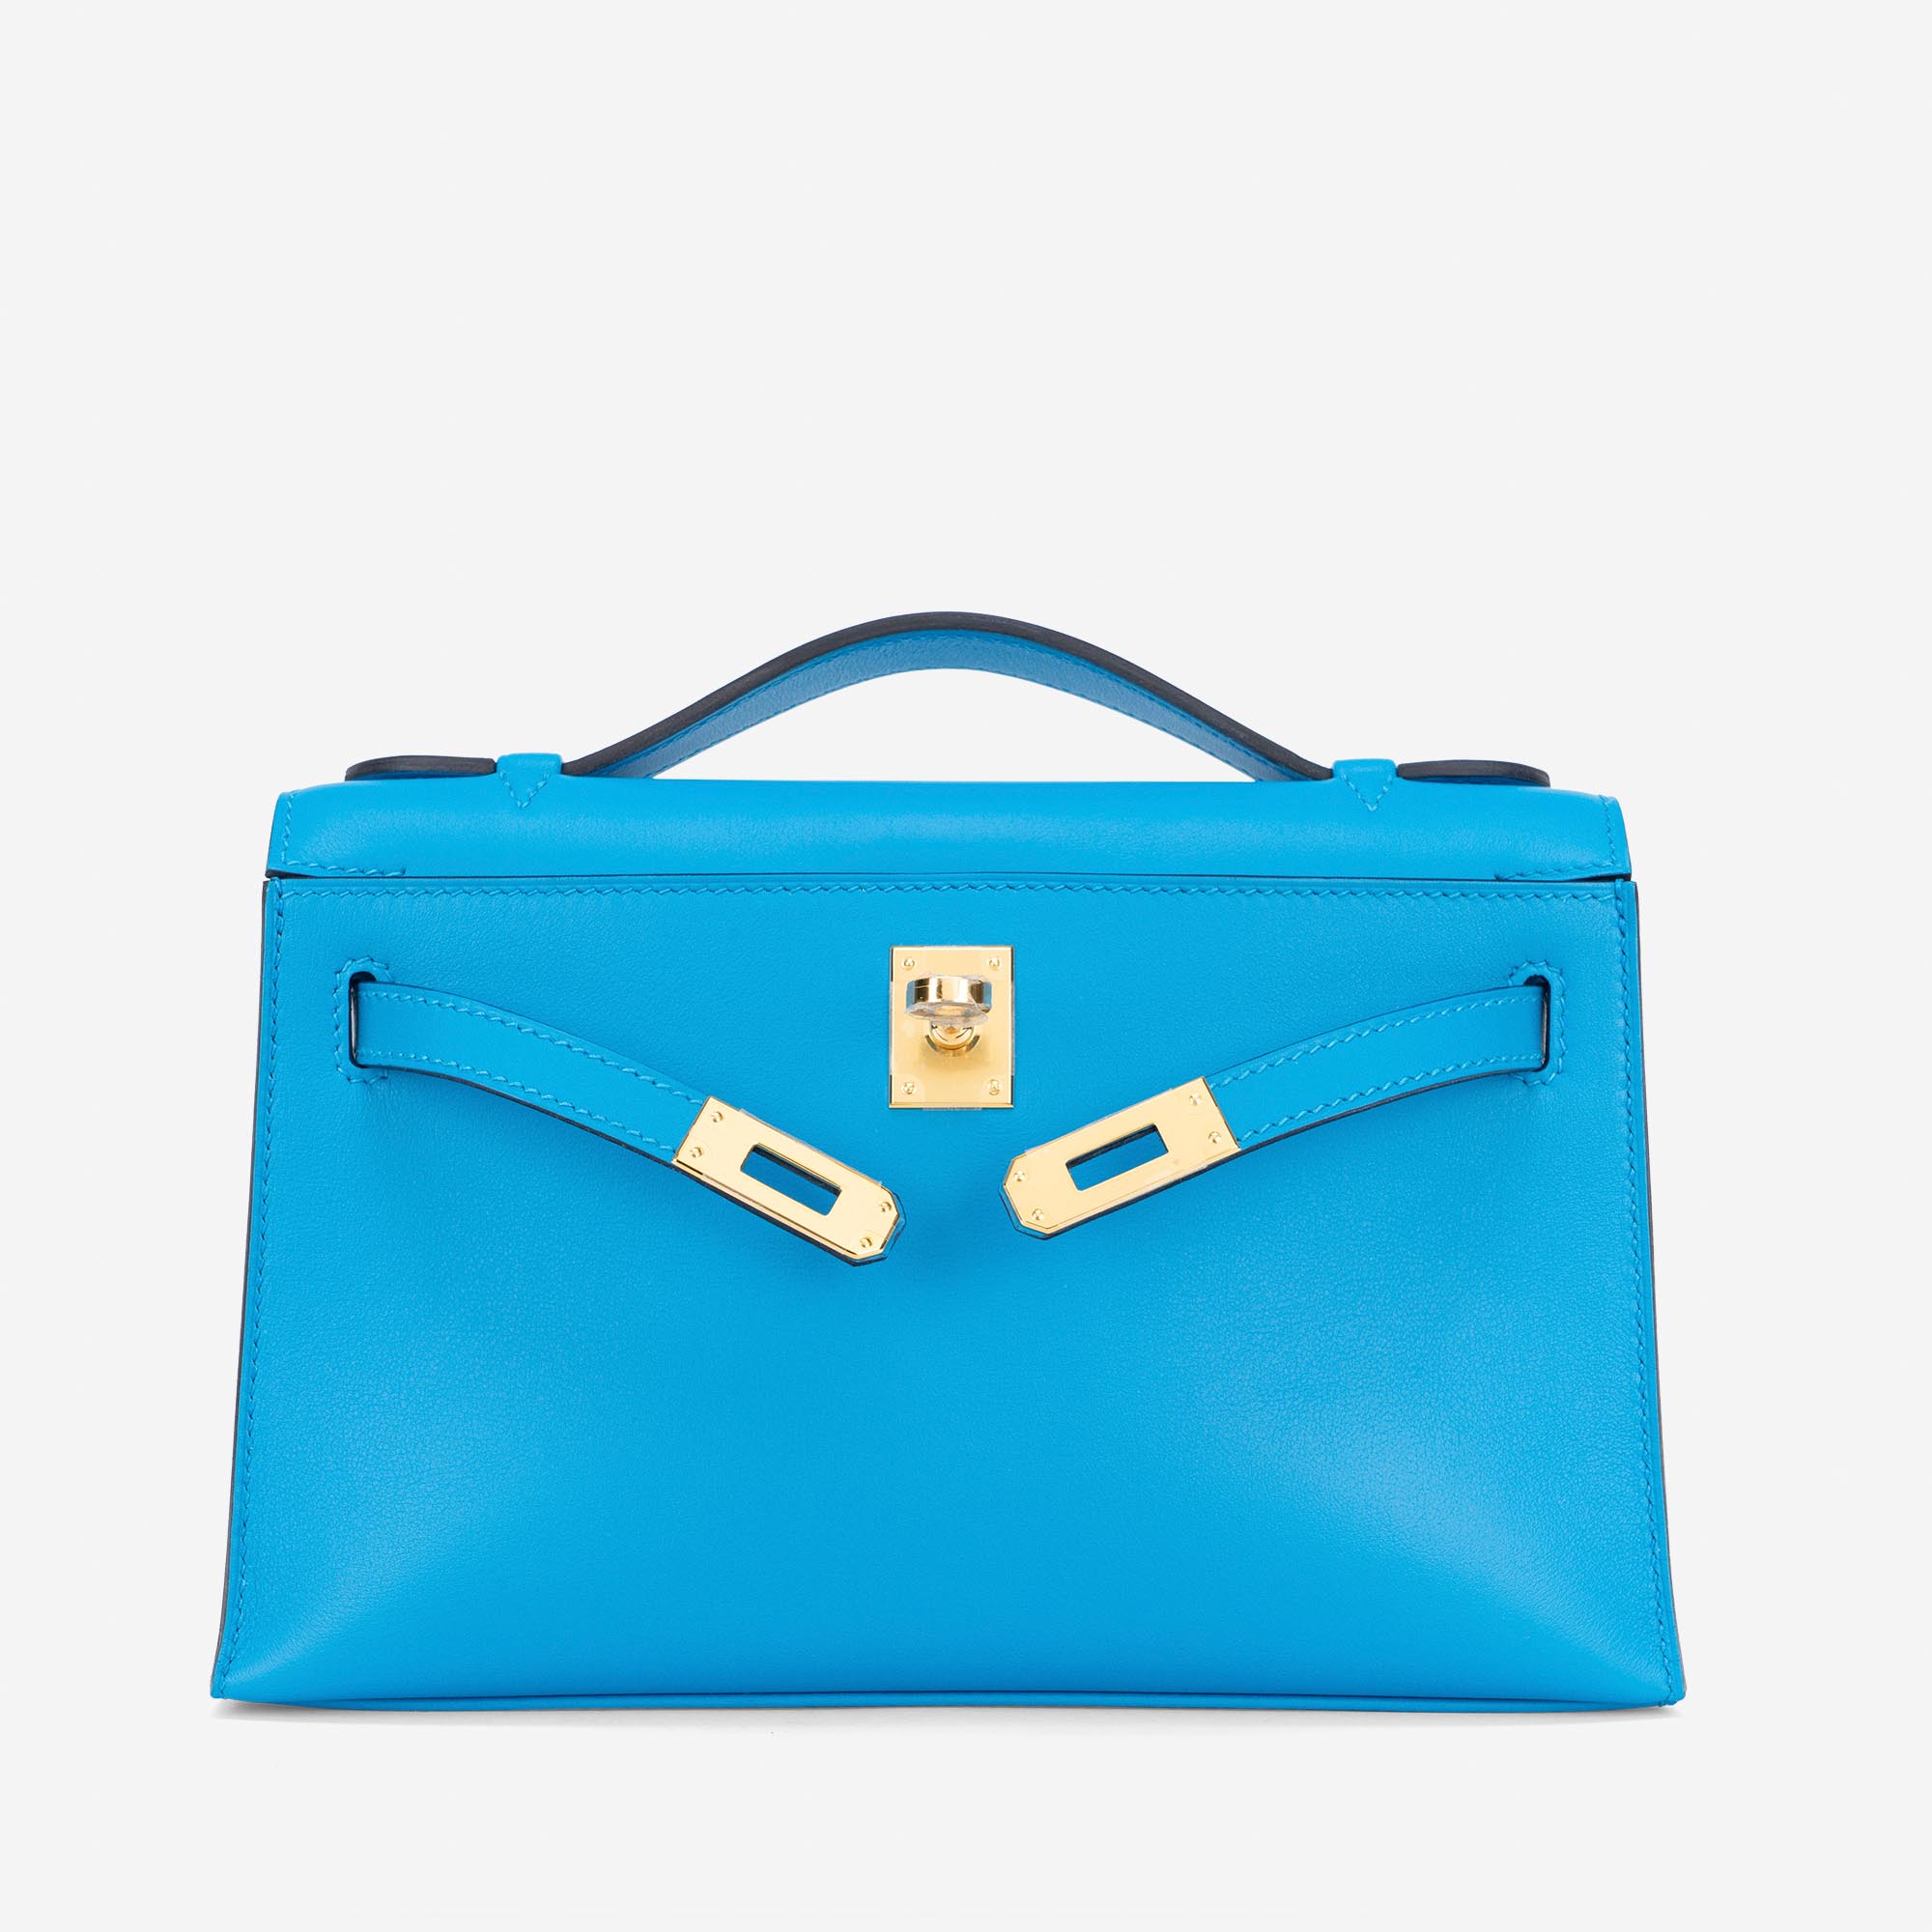 Occasion Hermès sac Kelly Pochette Swift Bleu Frida Bleu | Vendez votre sac de créateur sur Saclab.com